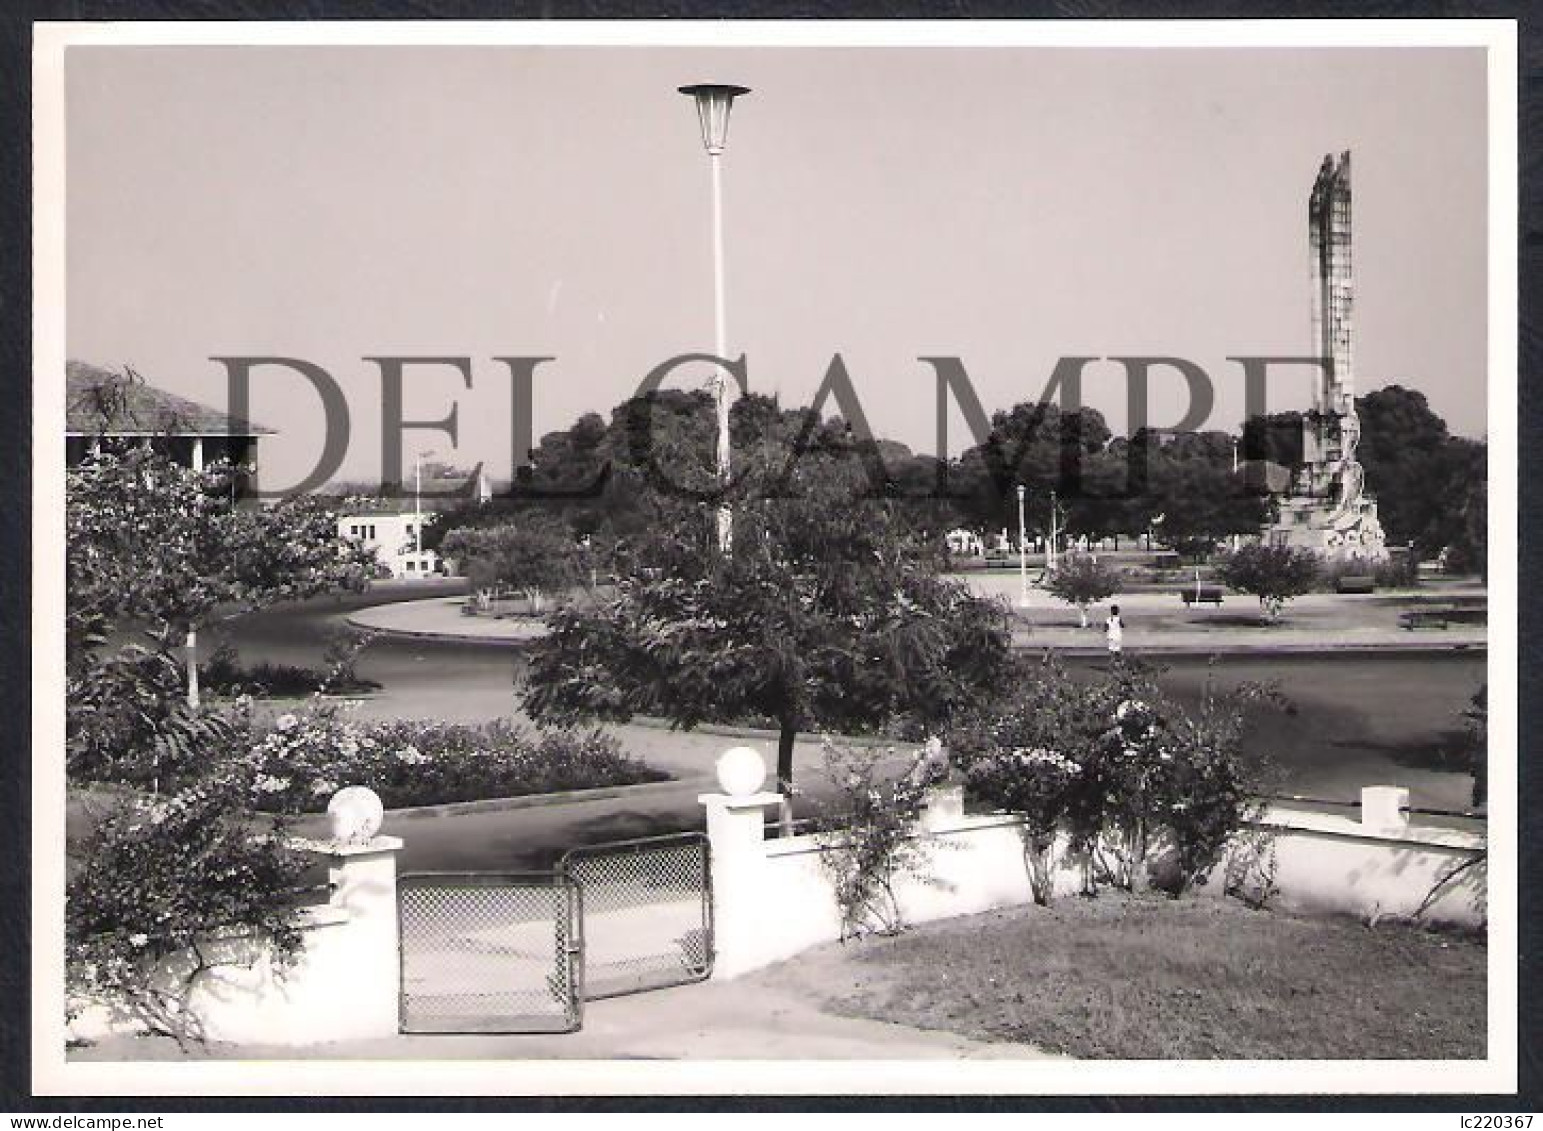 LOT W/23 REAL PHOTOS PORTUGAL GUINÉ GUINEA - DIVERSAS VISTAS DA CIDADE DE BOLAMA E DE DIVERSAS ACTIVIDADES - 1960'S - Africa